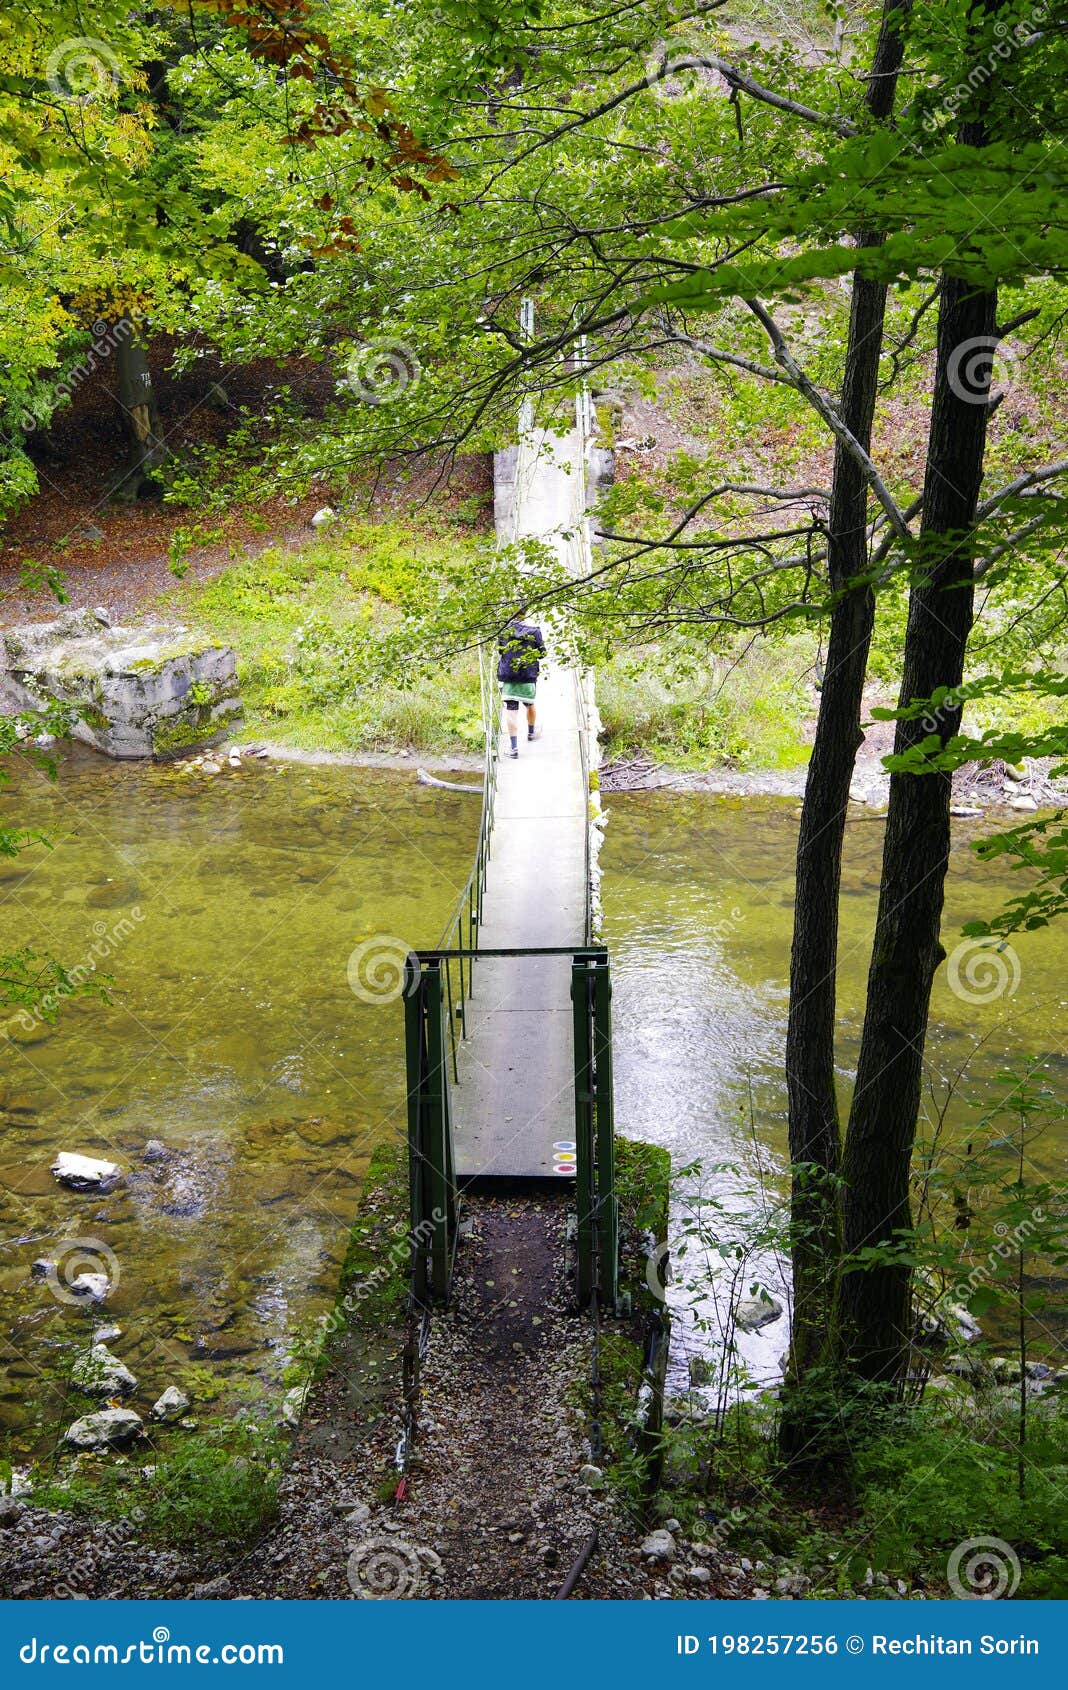 bridge in forest over cerna river, romania